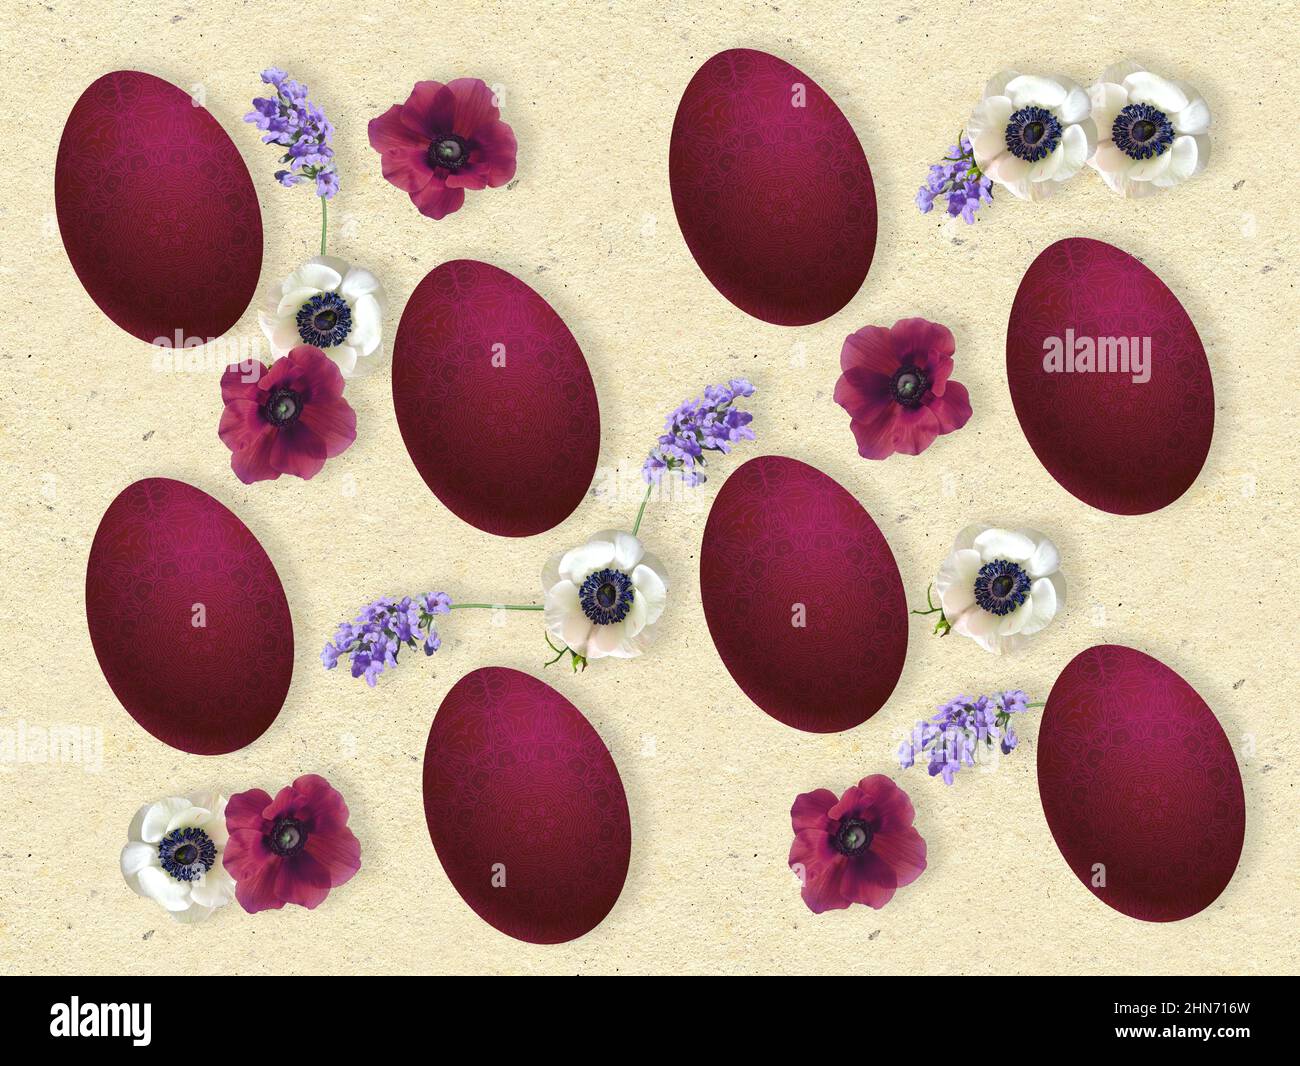 Composizione pasquale con uova dipinte a mano, anemoni bianchi e porpora e fiori di lavanda. Foto Stock